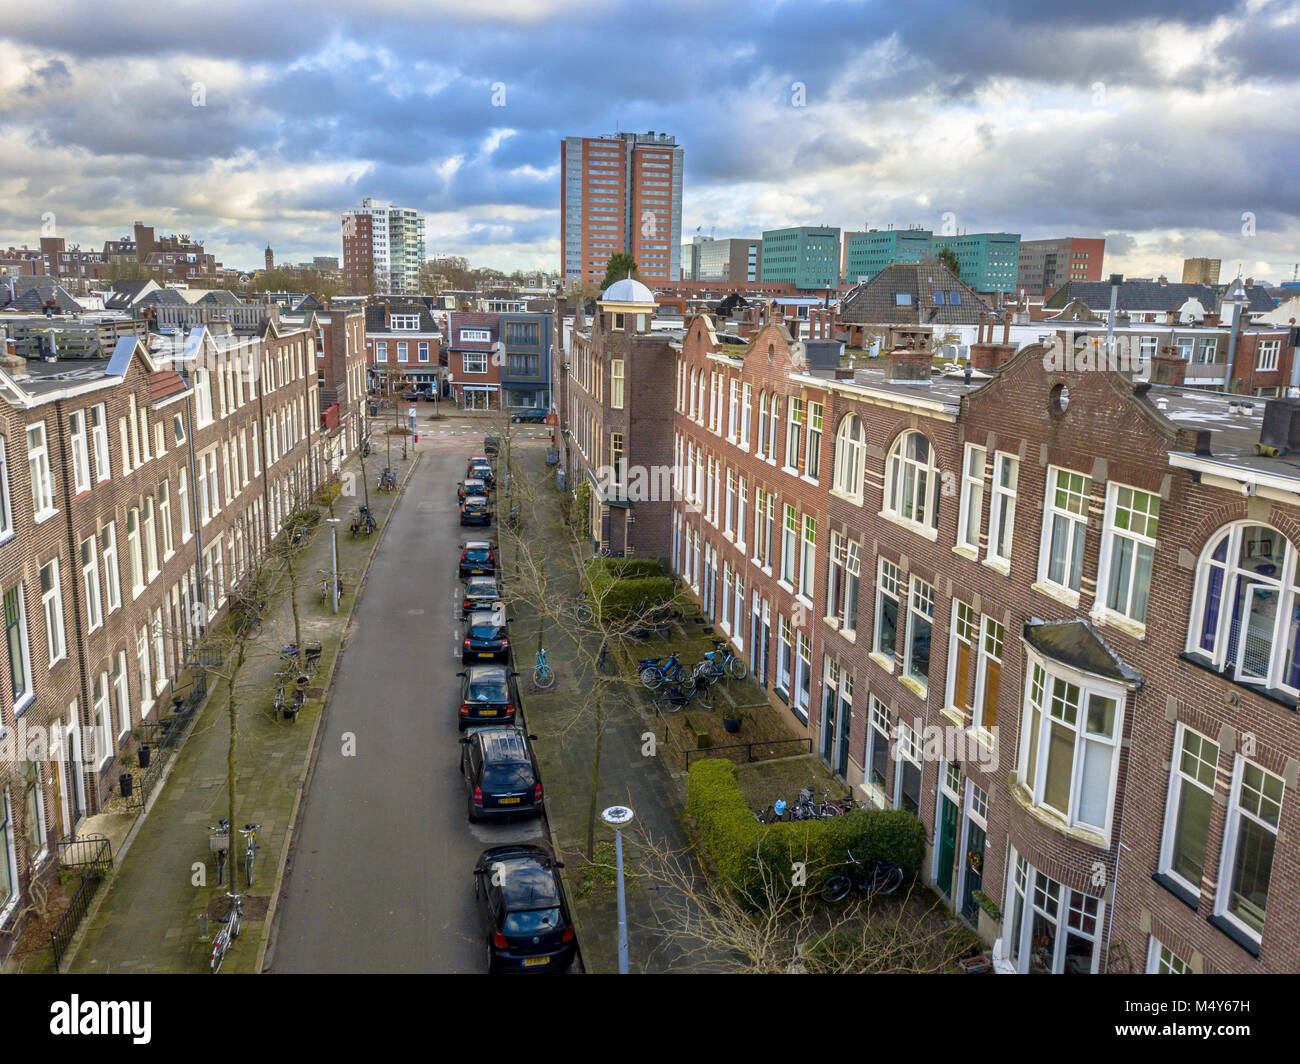 Vue sur rue avec siècle vieux appartement historique de maisons dans la ville de Groningen, Pays-Bas Banque D'Images